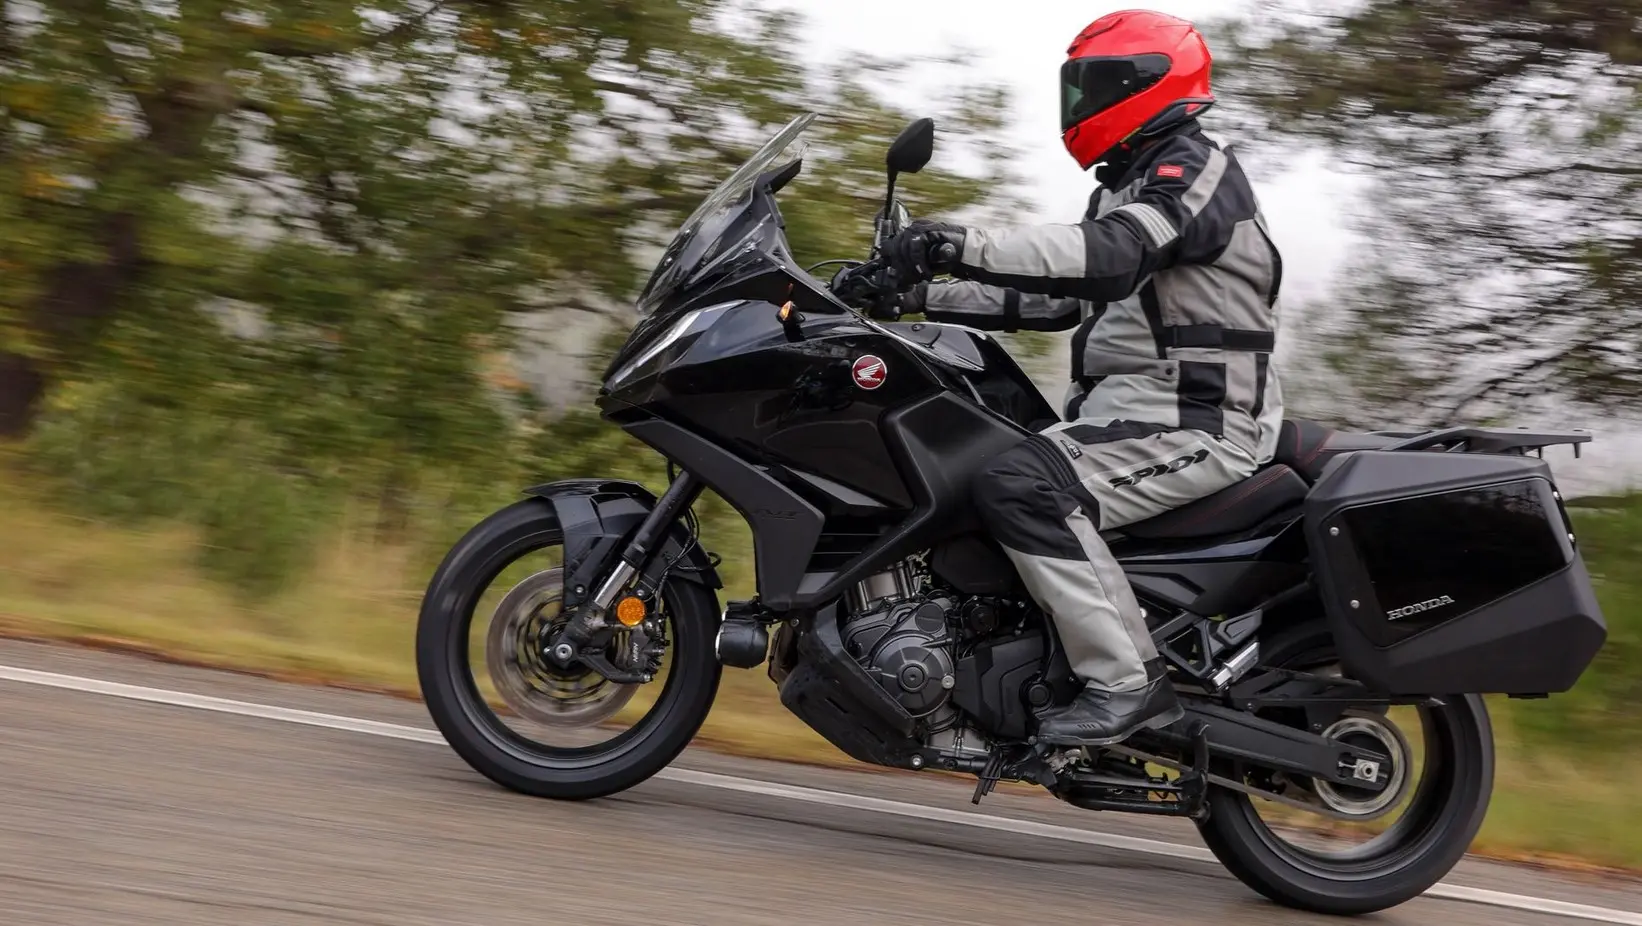 pantalla moto custom - Cómo se llama la pantalla de la moto